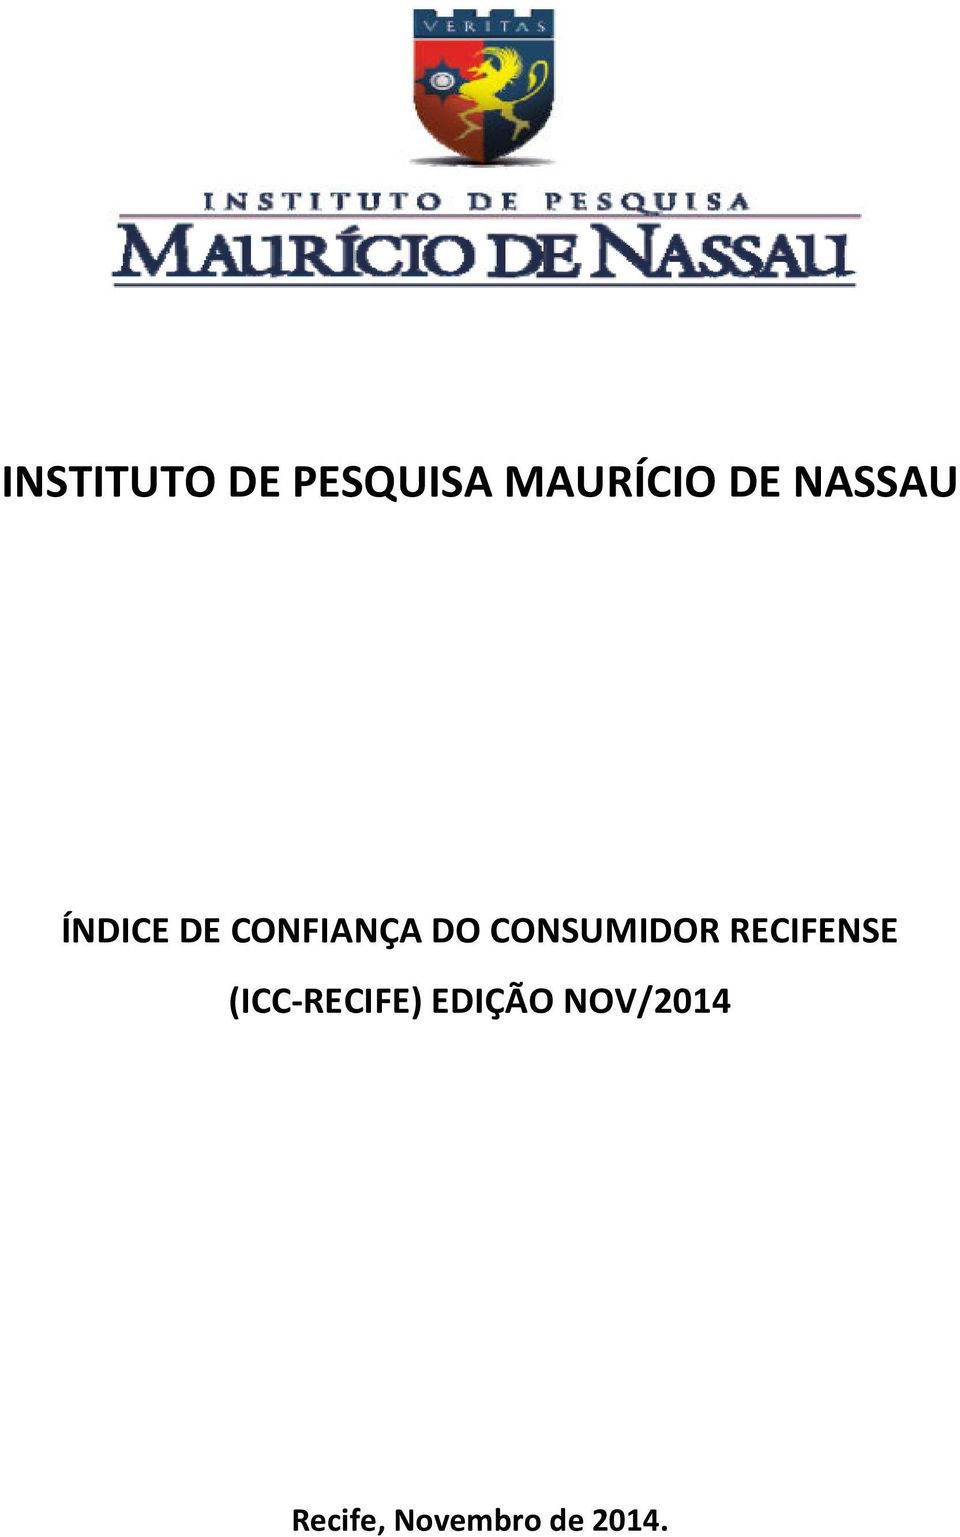 CONSUMIDOR RECIFENSE (ICC-RECIFE)